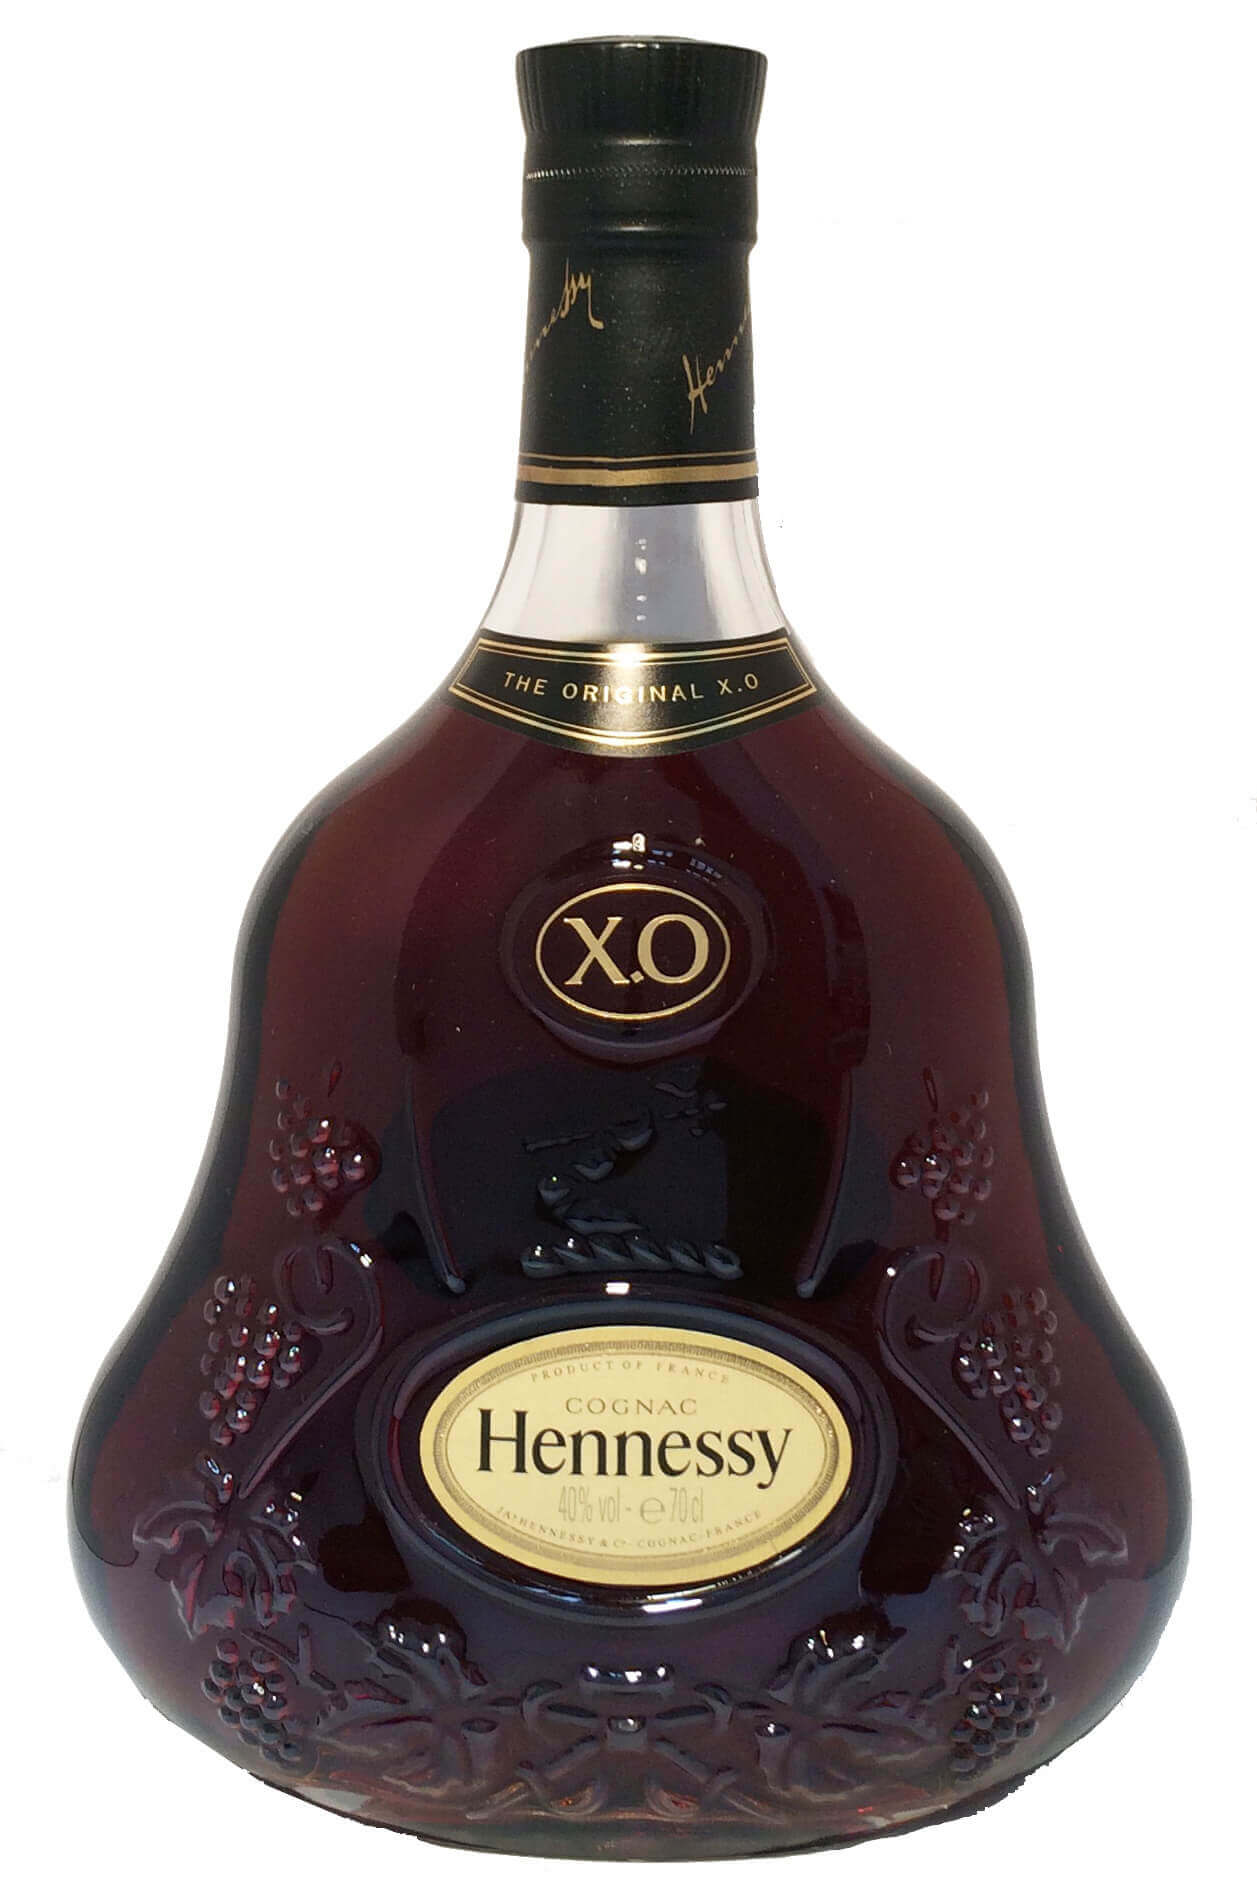 Хеннесси 0.7 оригинал. Коньяк Хеннесси Хо. 0.7Л коньяк Хеннесси Хо. Hennessy Cognac 0.5 Хо. Хеннесси Хо Extra old Cognac 0.7.